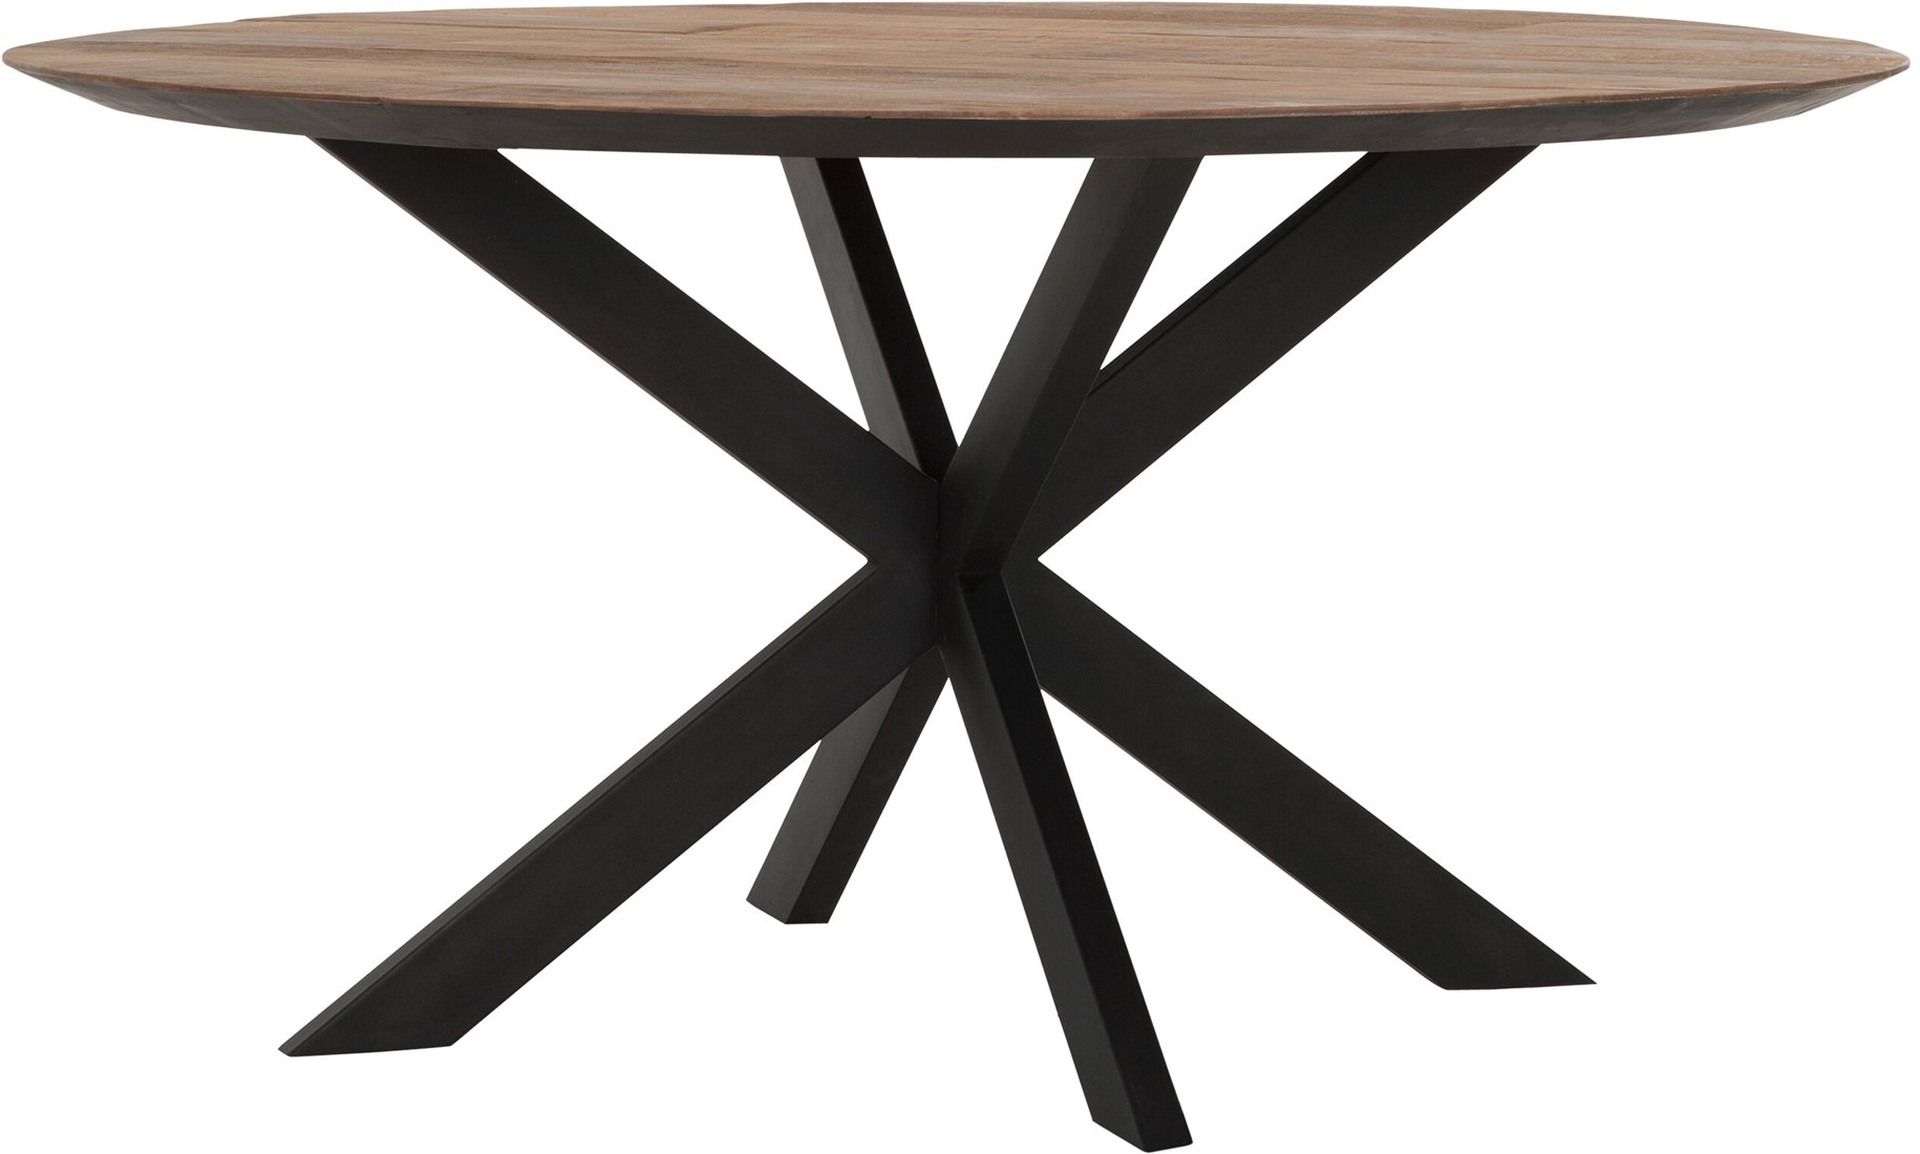 Der Esstisch Shape überzeugt mit seinem modernem aber auch massivem Design. Gefertigt wurde der Tisch aus recyceltem Teakholz, welches einen natürlichen Farbton besitzt. Das Gestell ist aus Metall und ist Schwarz. Der Tisch hat einen Durchmesser von 150 c